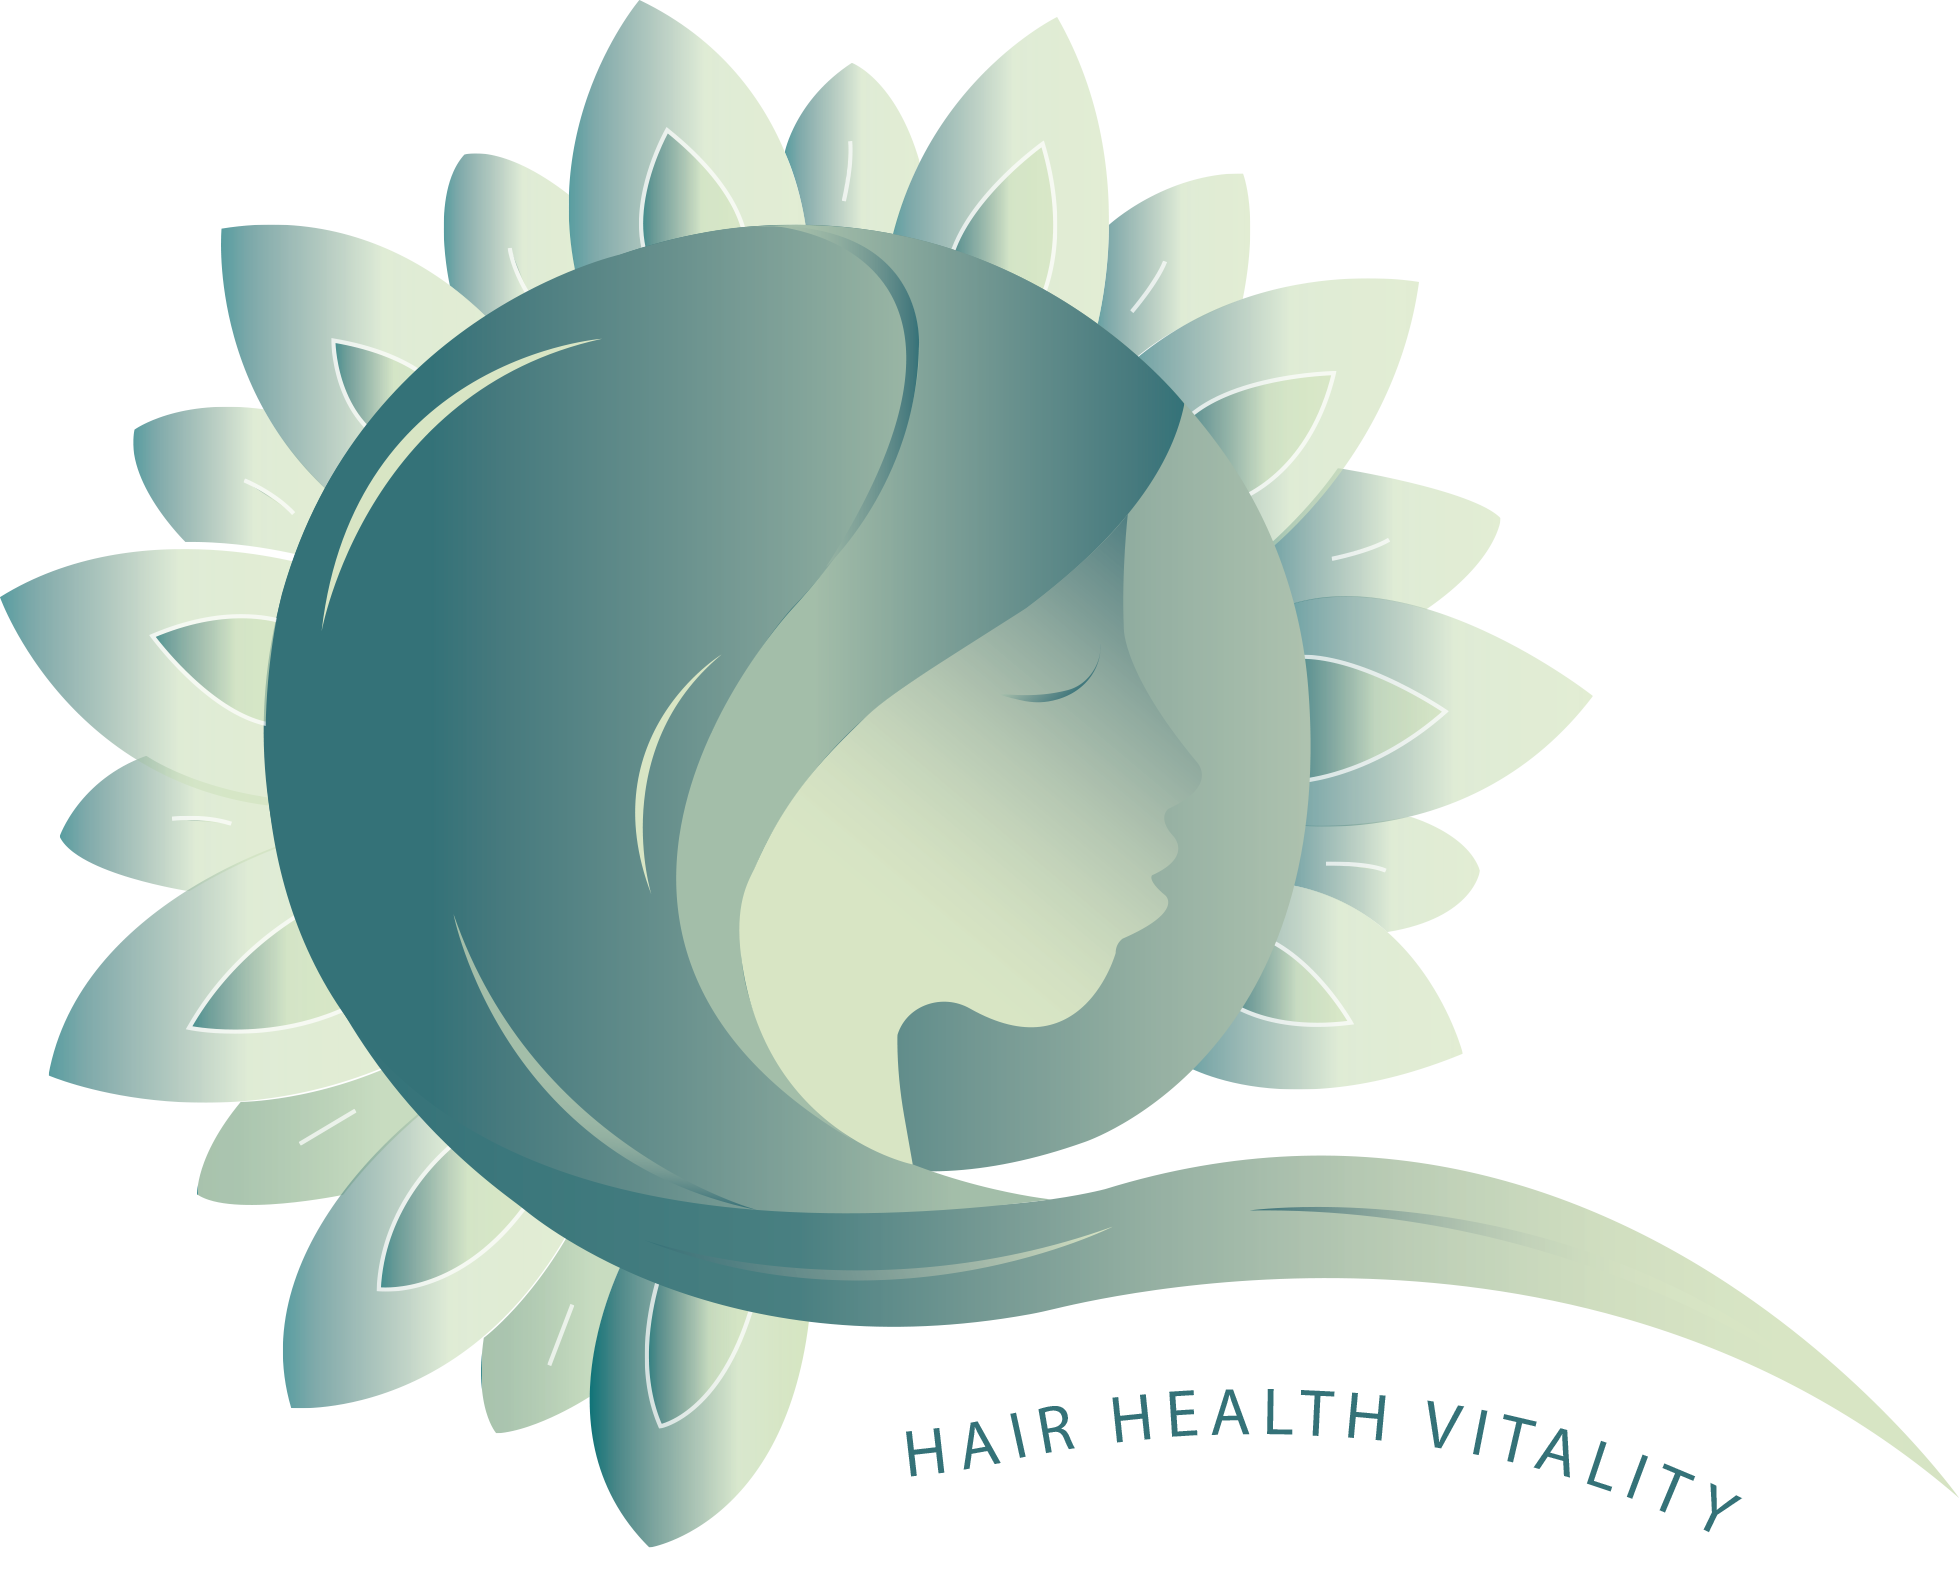 Hair Health Vitality